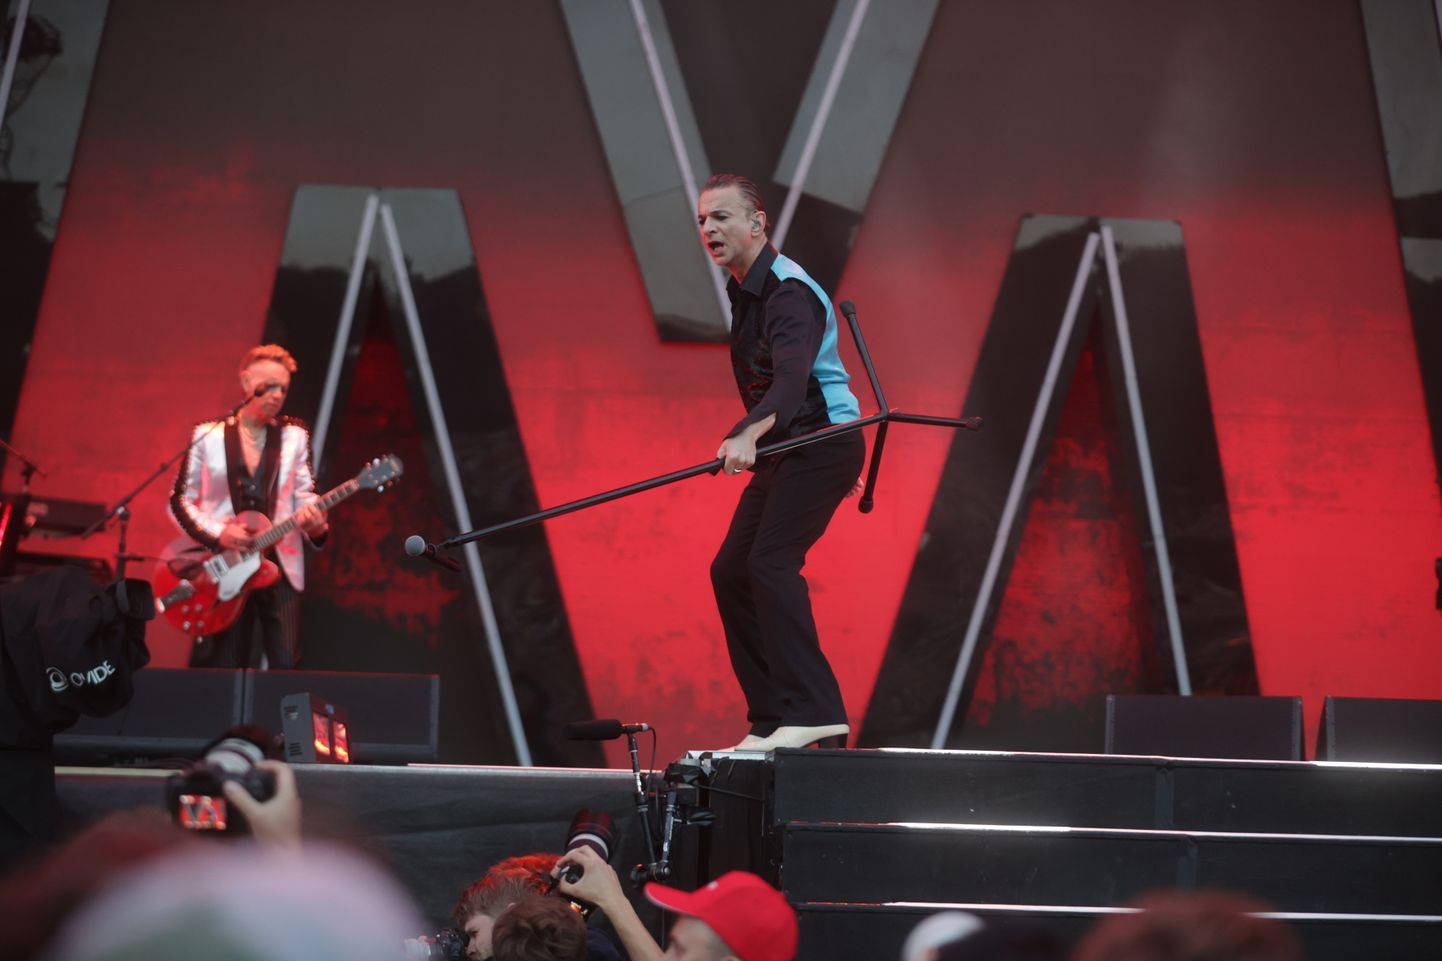 Depeche Mode'i kontsert 6. augustil Tallinna lauluväljakul